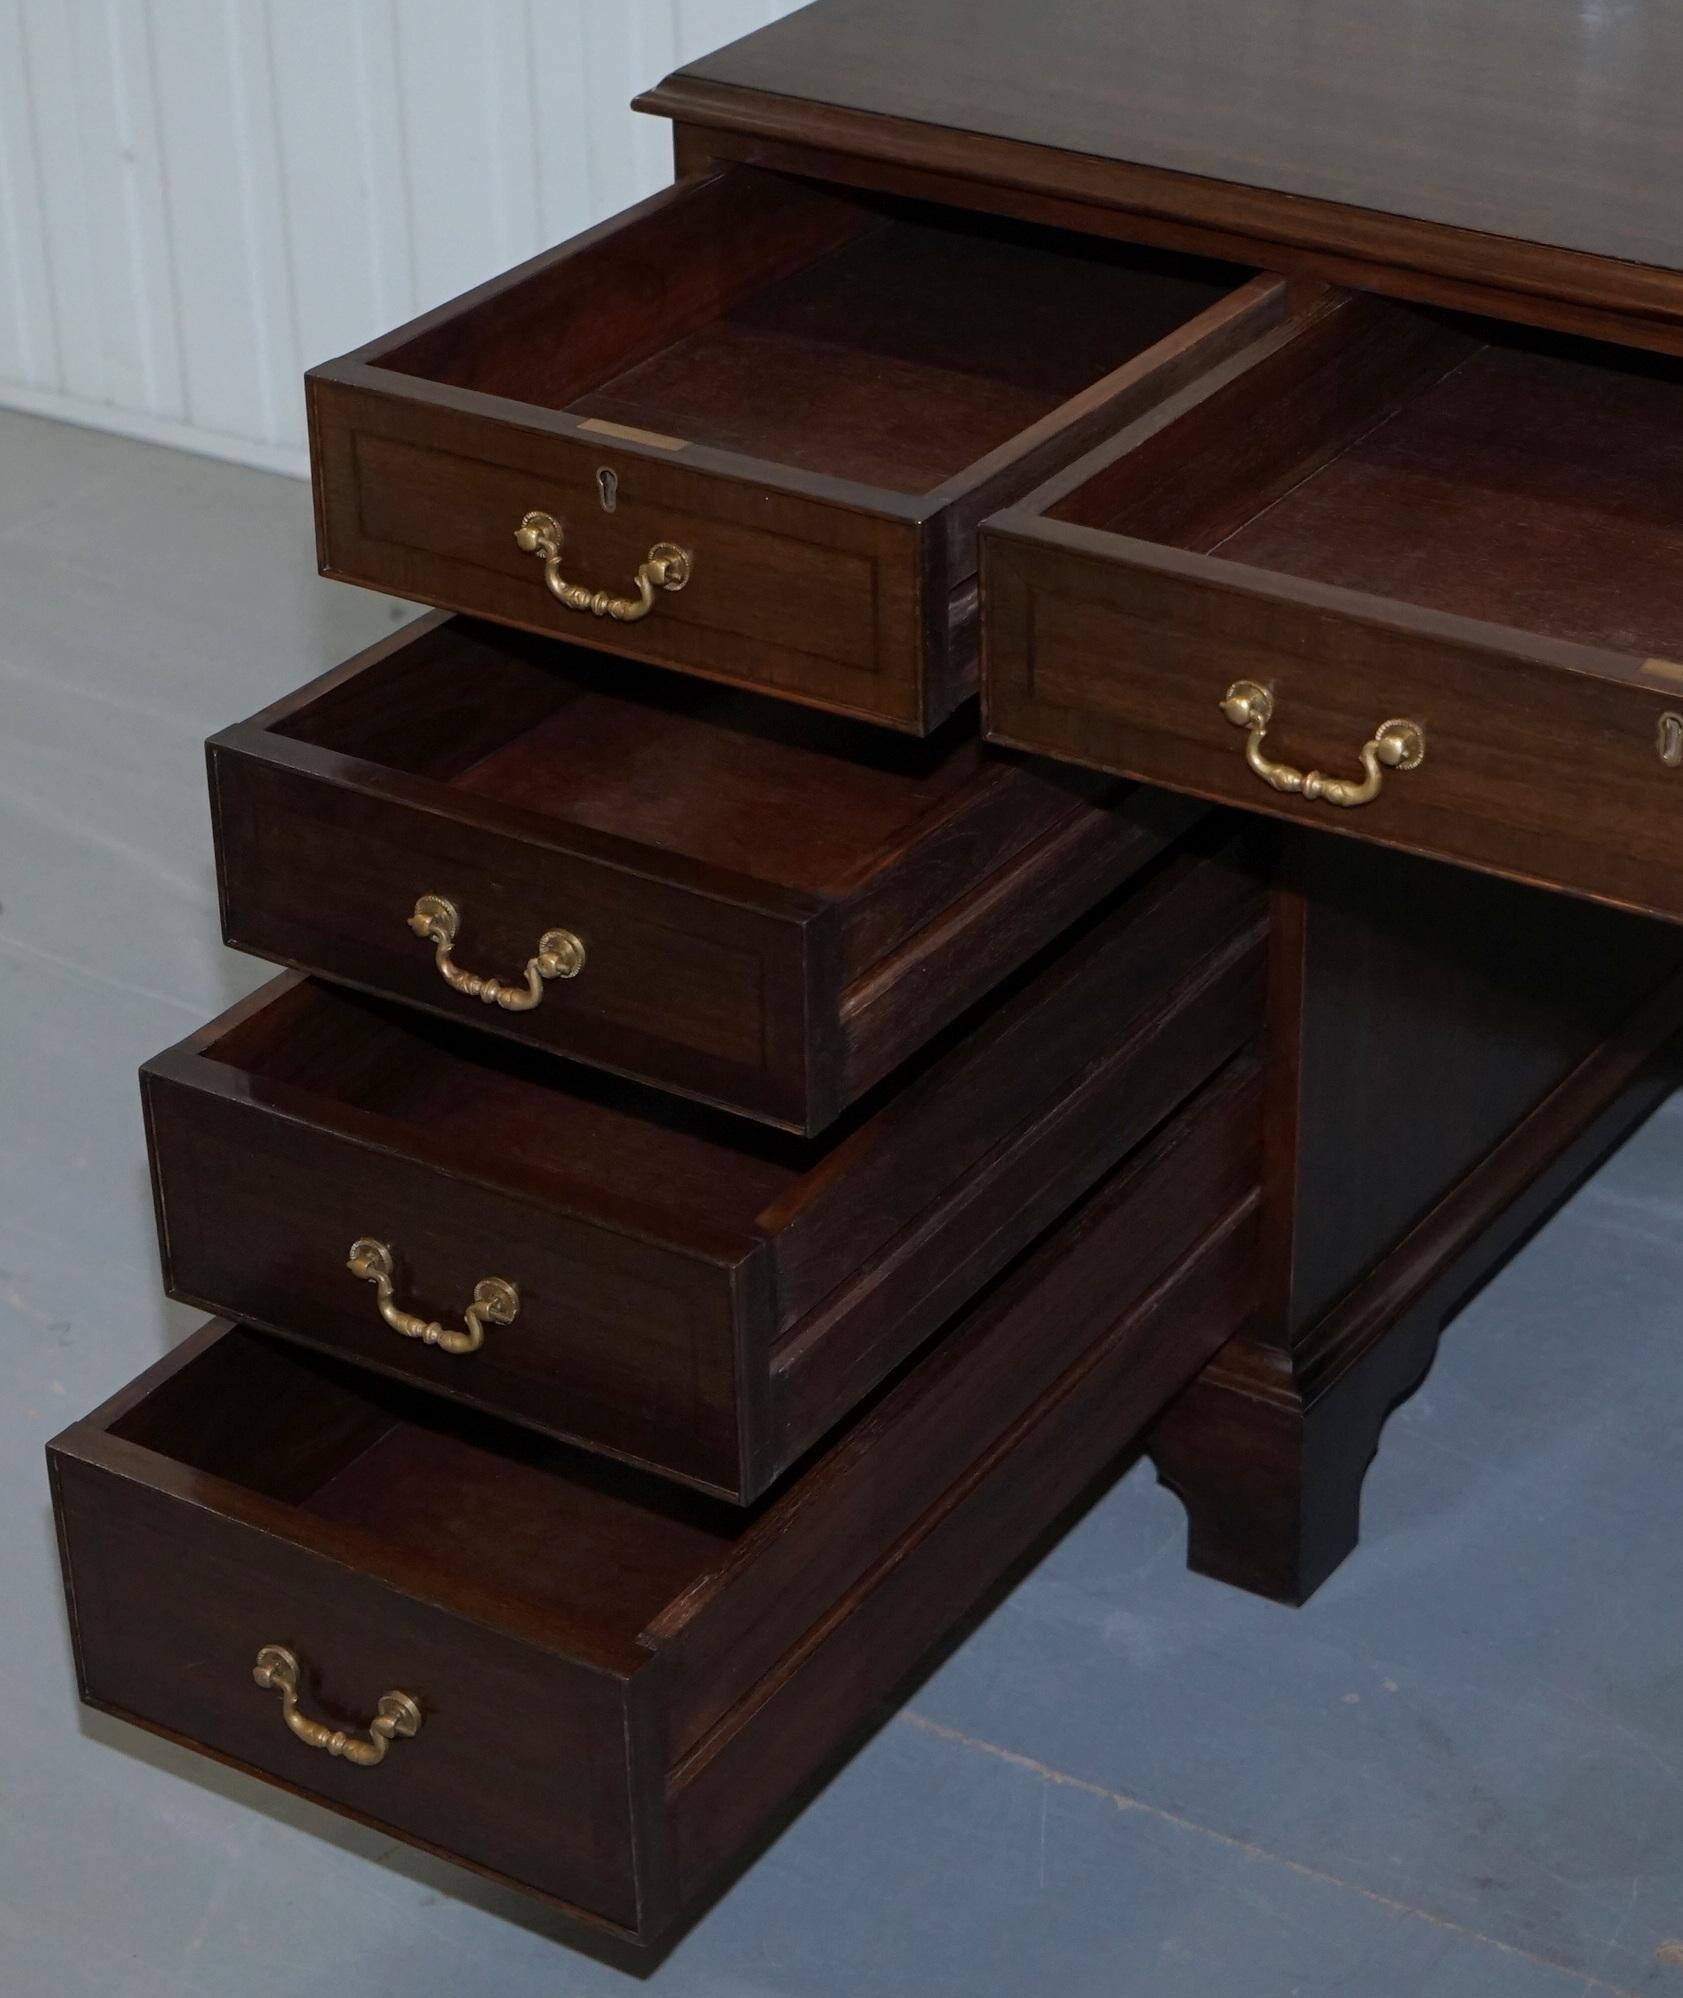 Vintage Stunning Large Solid Hardwood Twin Pedestal Partner Desk Rare Find 10